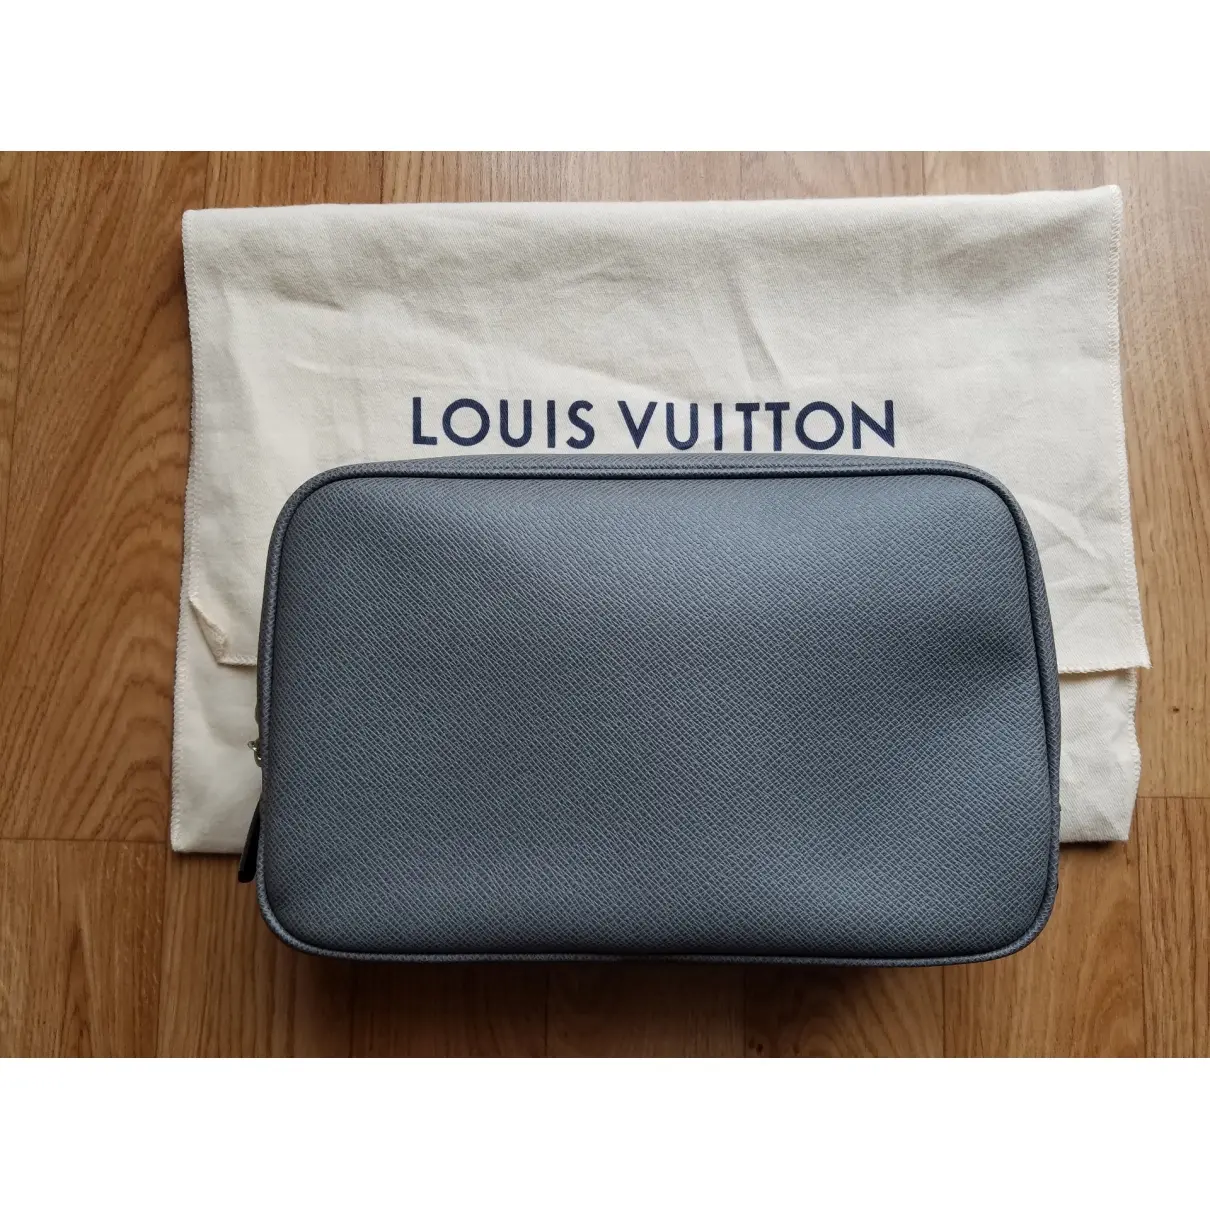 Louis Vuitton Trousse de toilette  leather small bag for sale